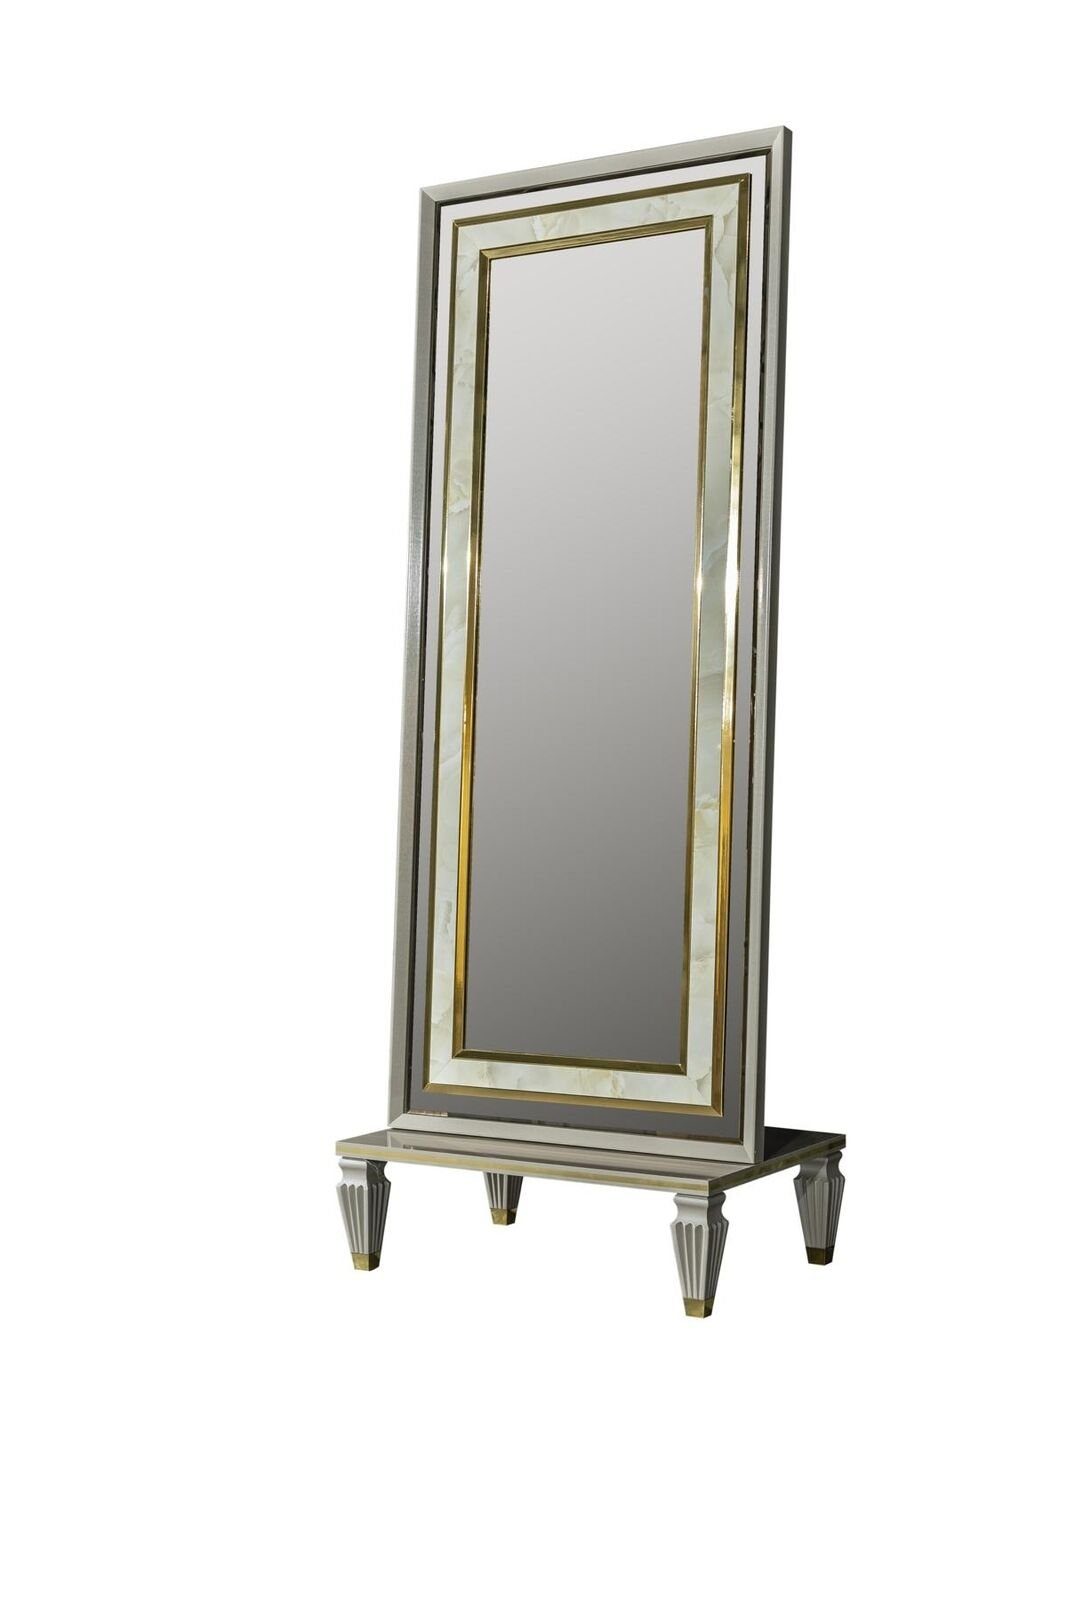 JVmoebel Spiegel Spiegel Grau Körpergröße Modern Stehspiegel Metall Standspiegel